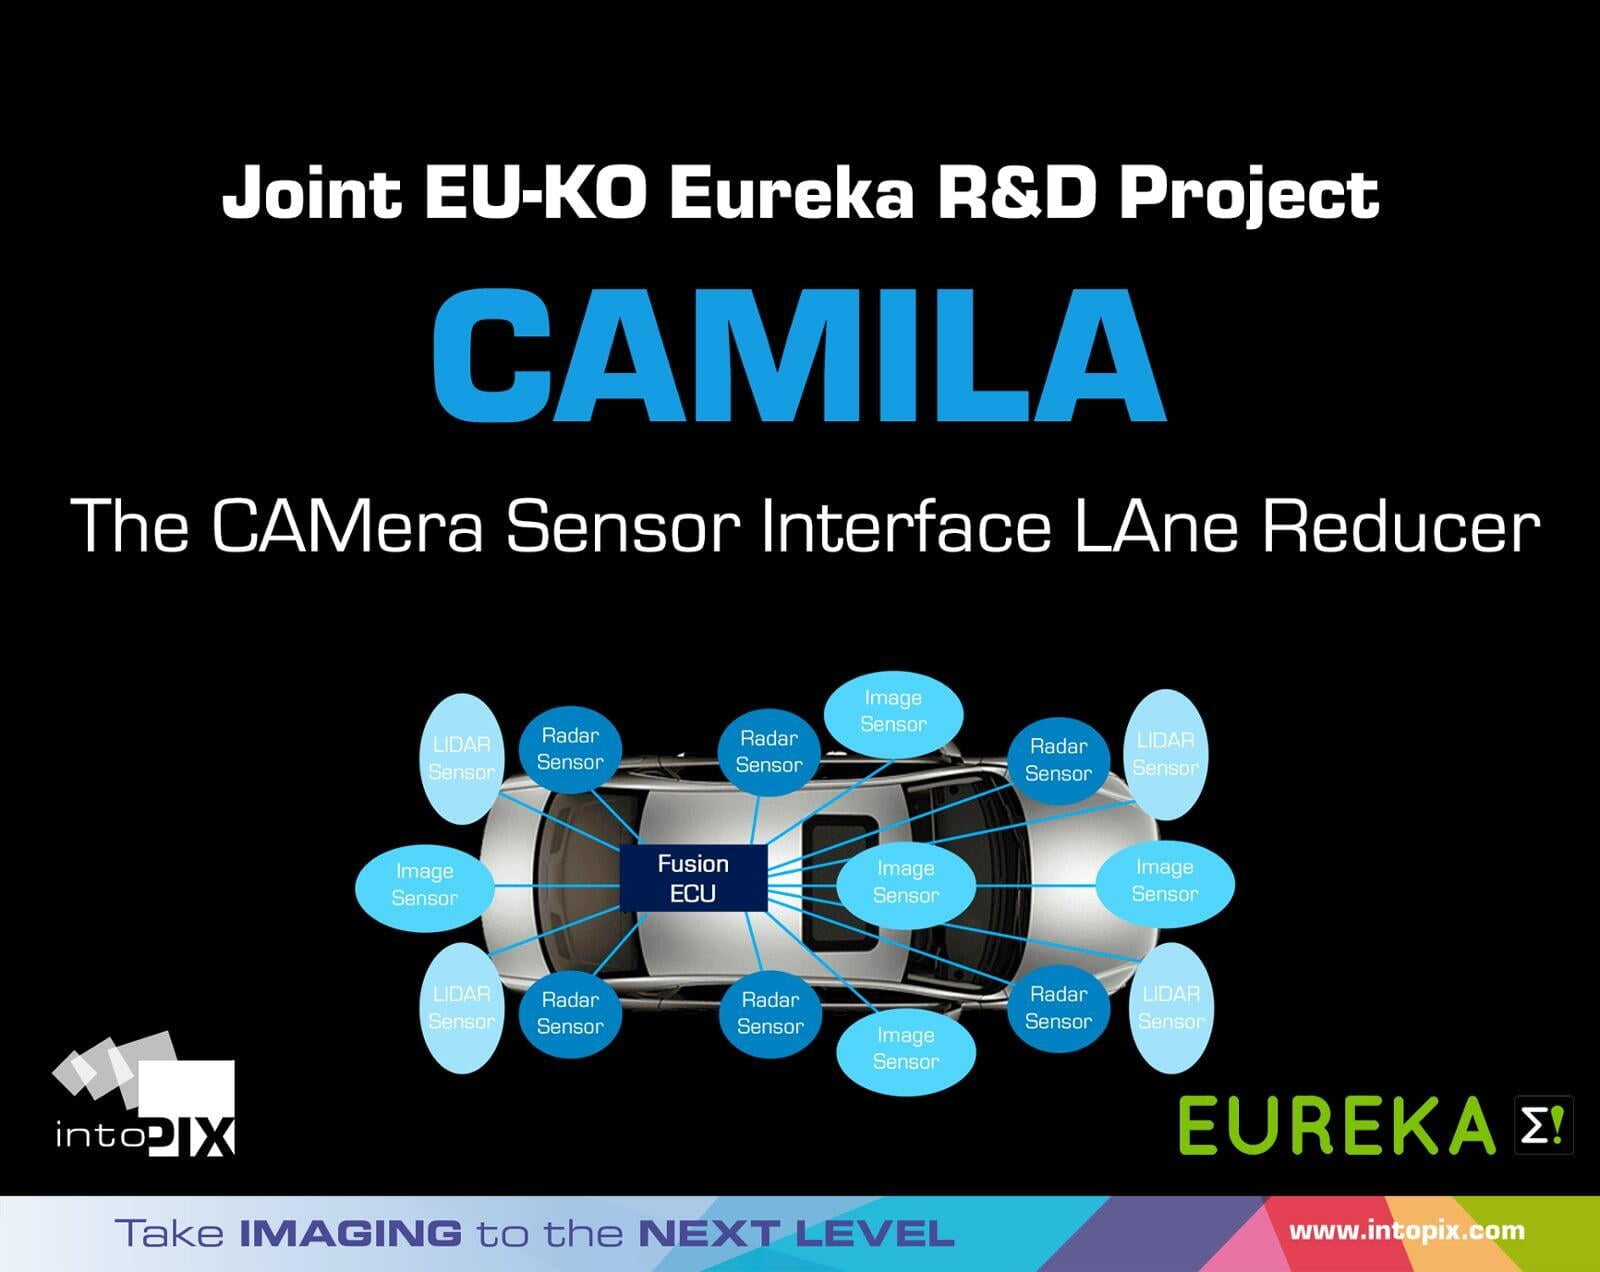 intoPIX dirige le nouveau projet de recherche CAMILA (CAMera Sensor Interface LAne Reducer).